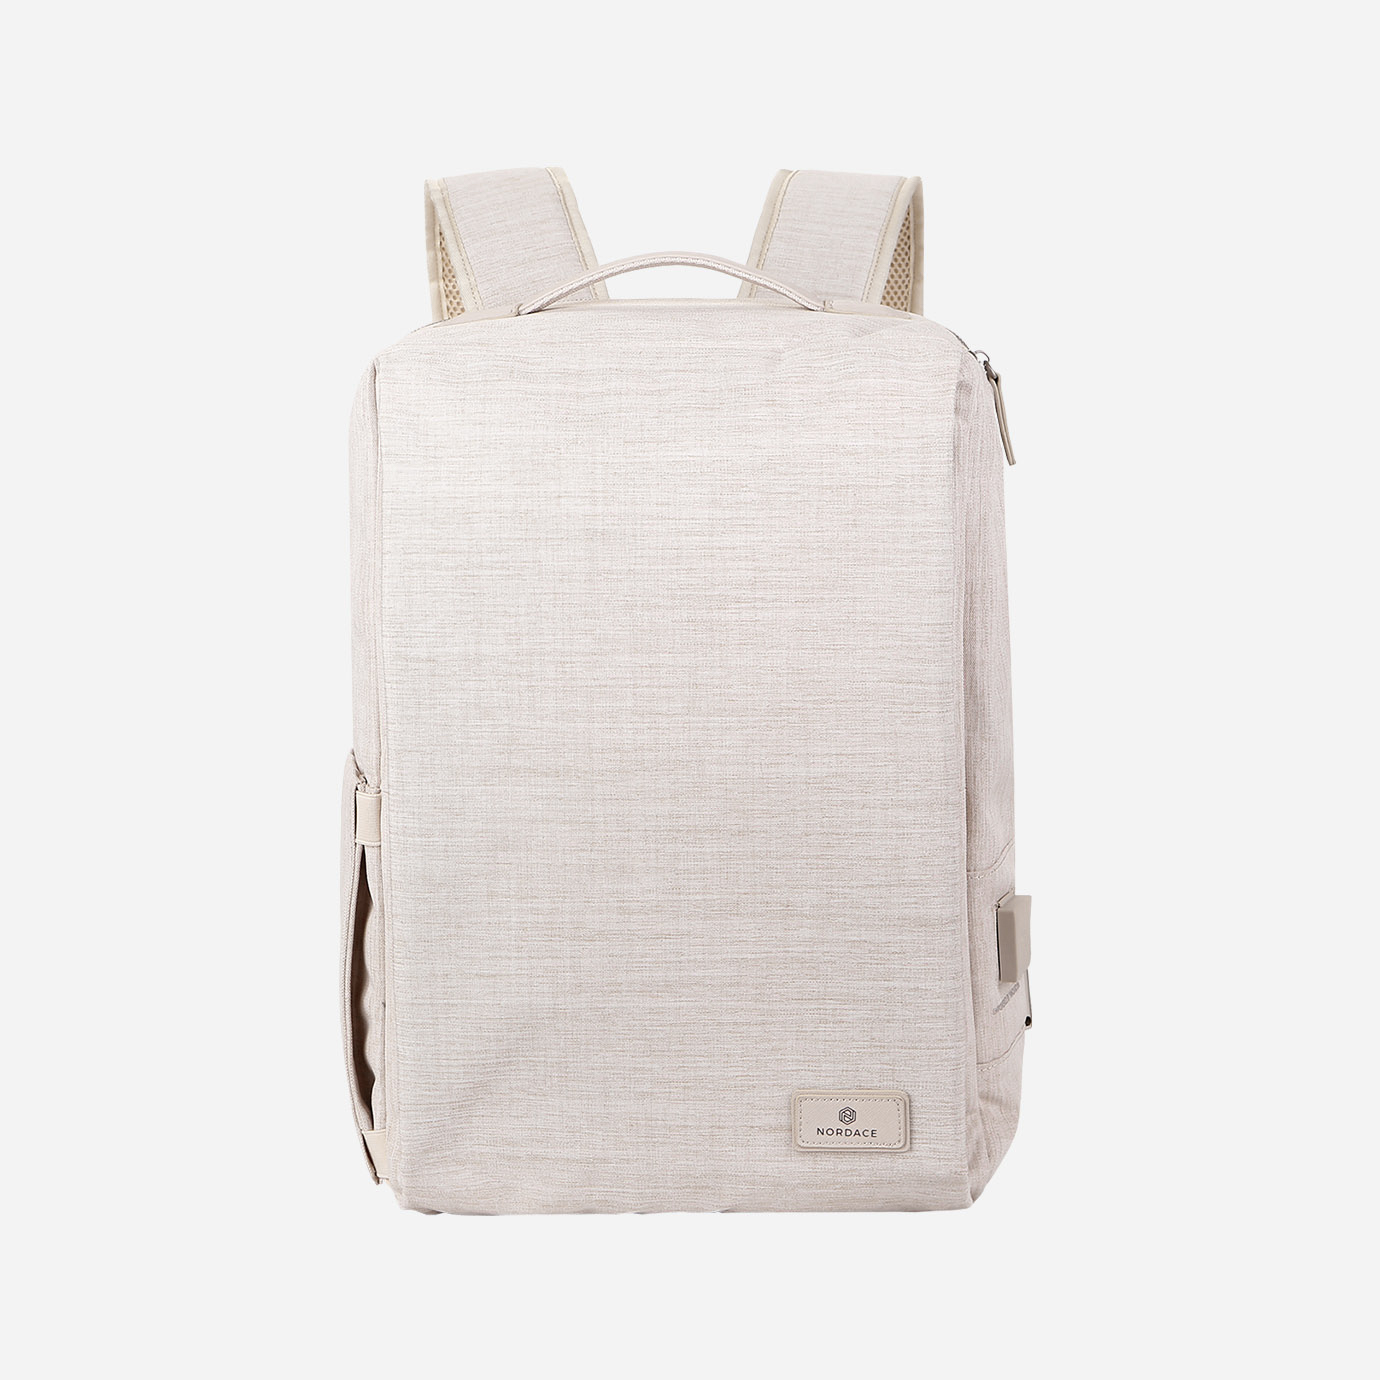 Nordace Backpacks | Siena II Smart Backpack-Beige